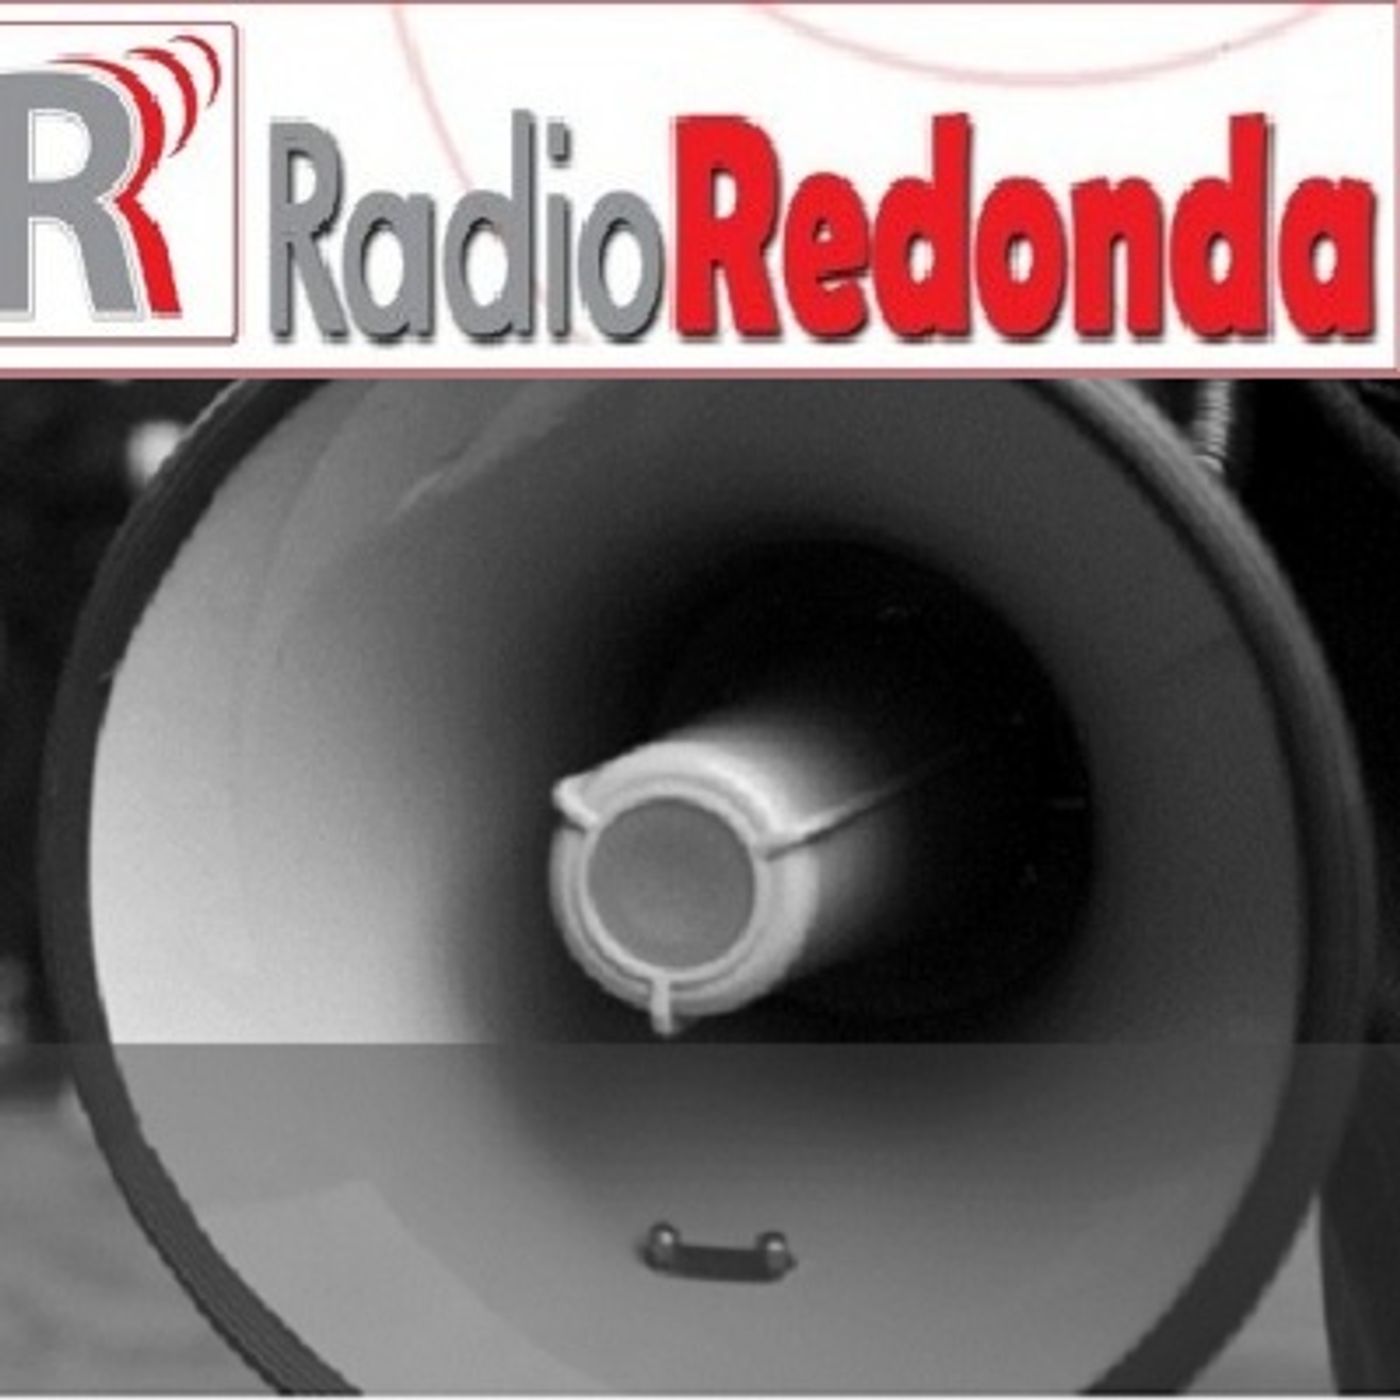 Radio Redonda